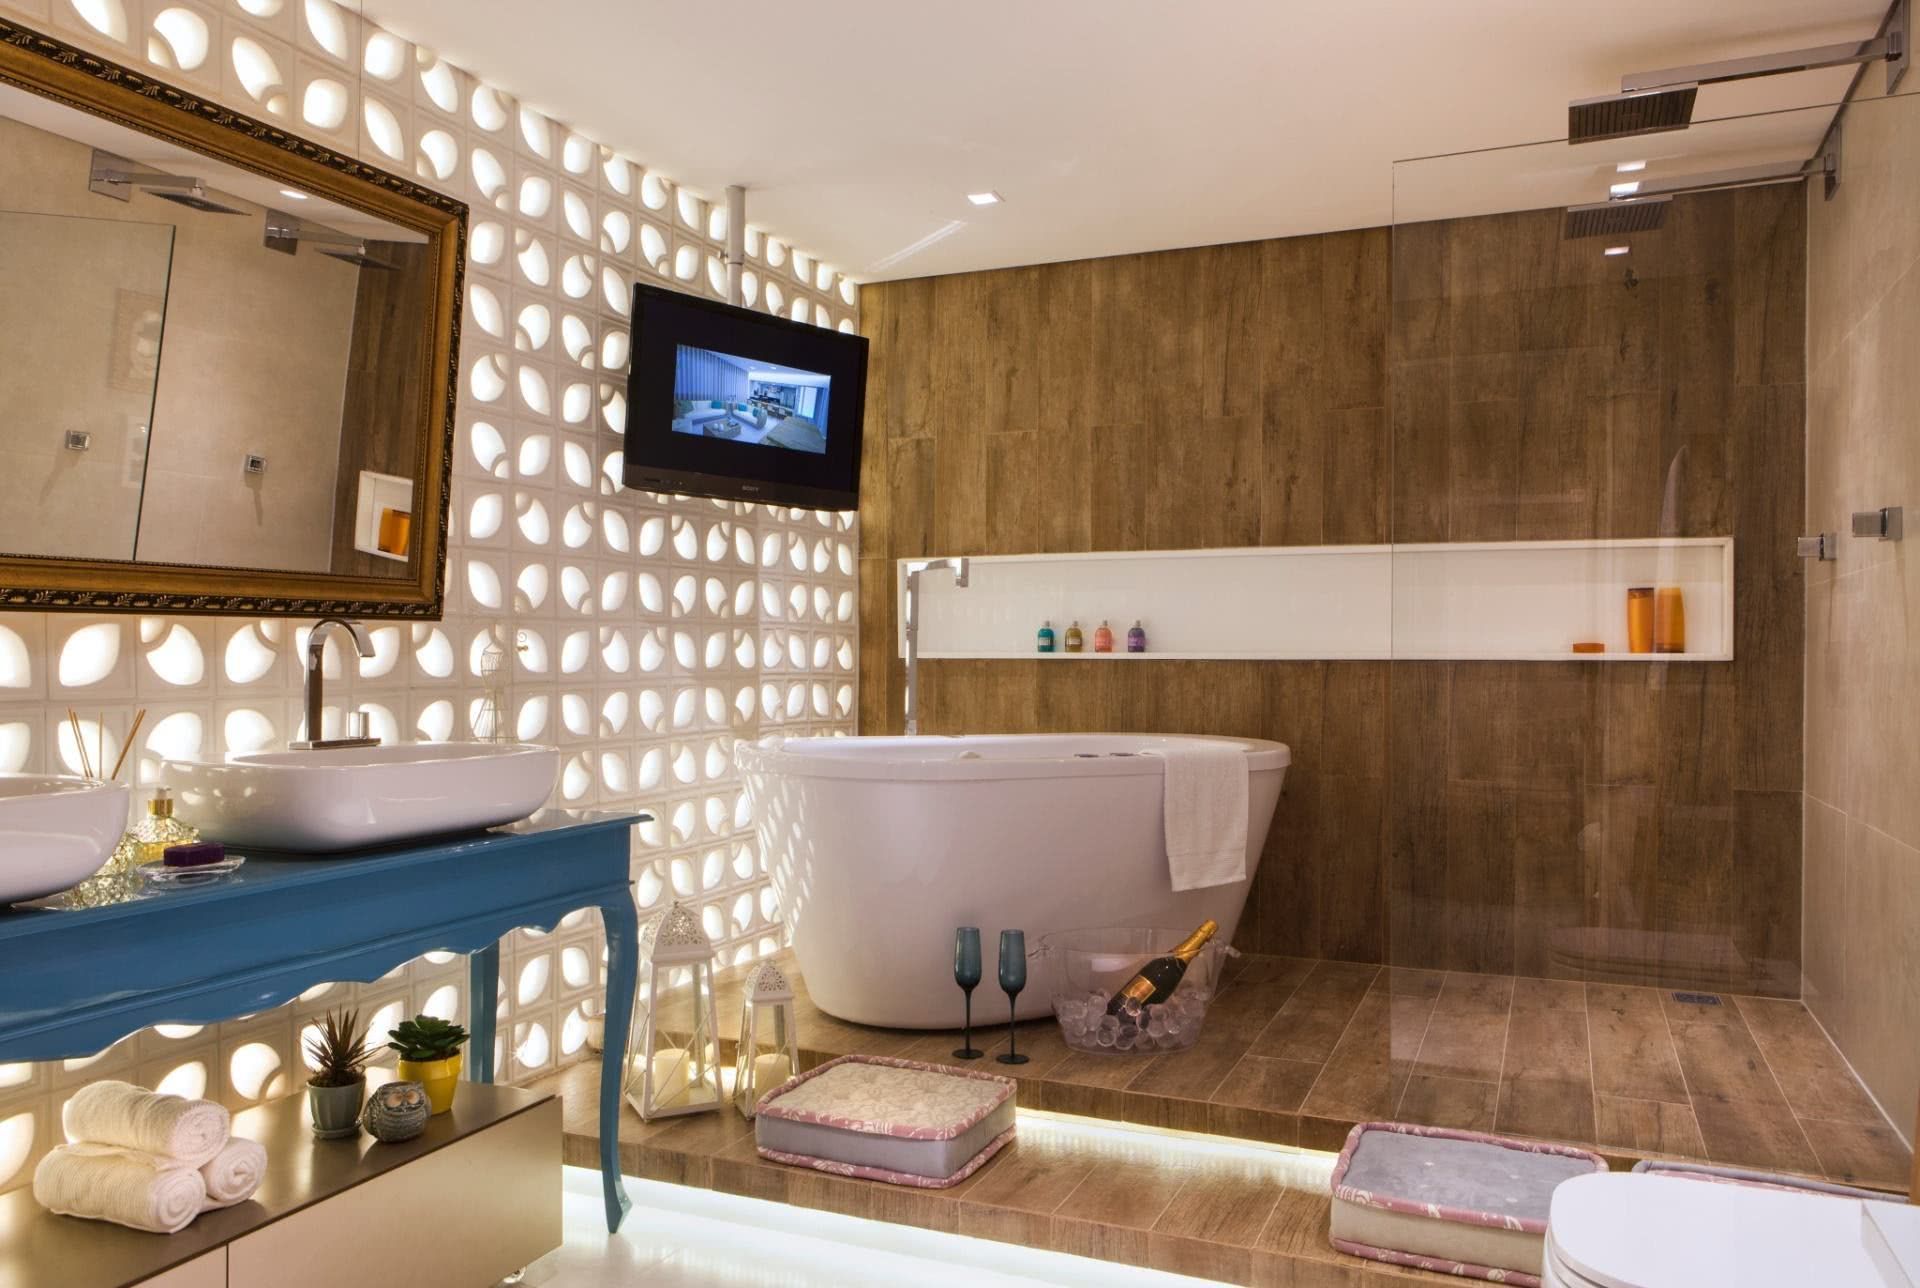 Salle de bain moderne et élégante pour ceux qui aiment se détendre